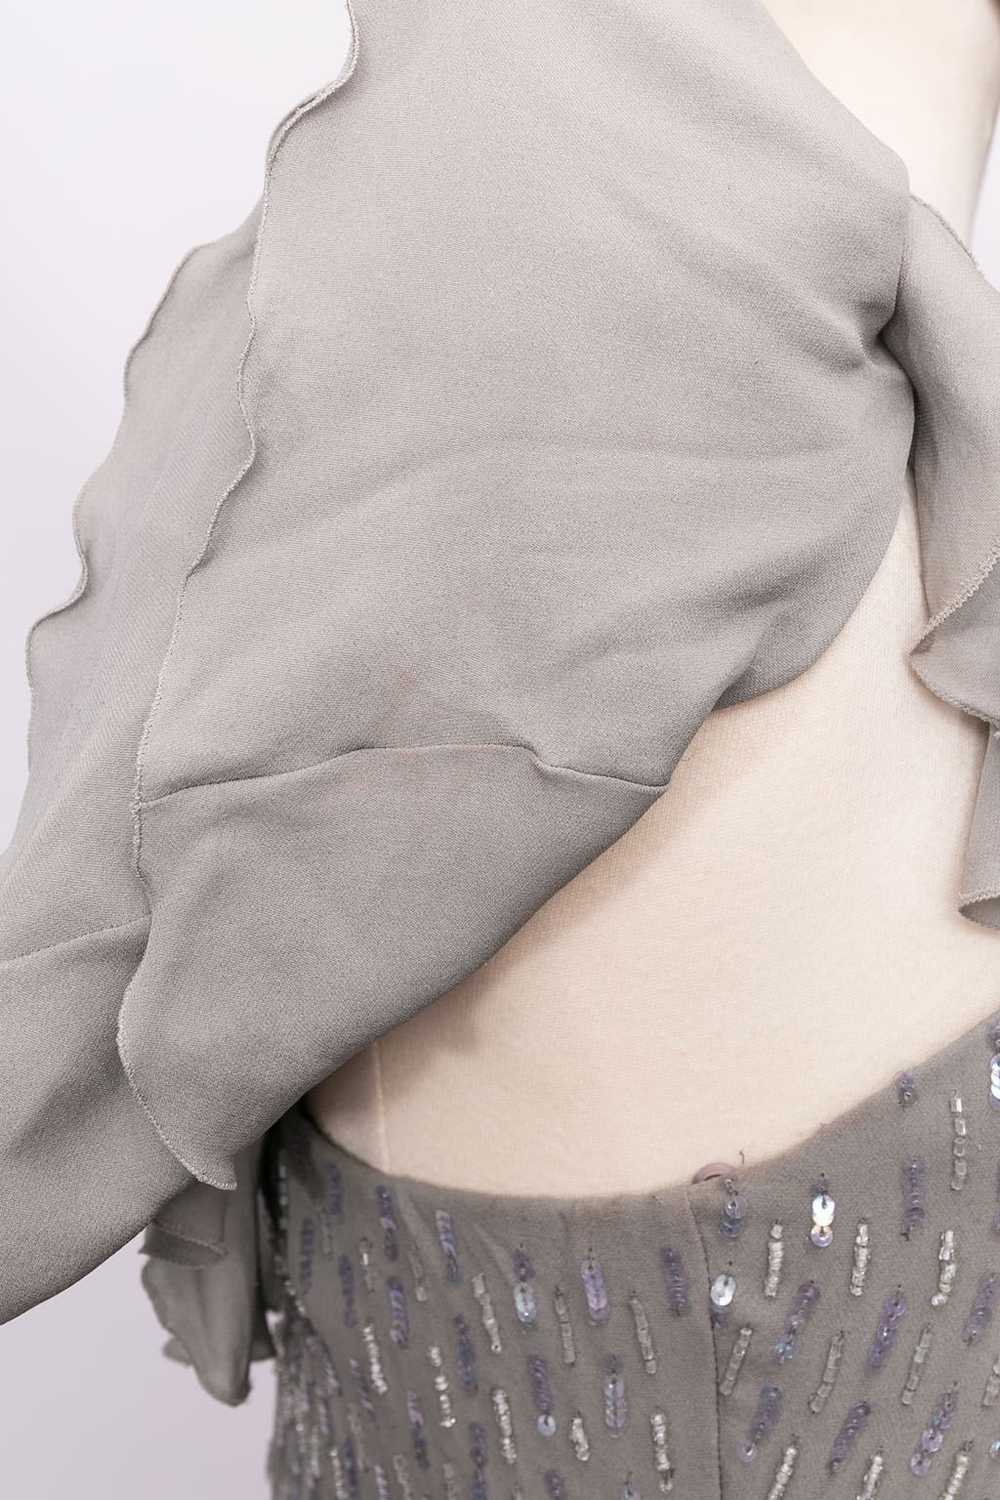 Loris Azzaro grey silk dress - image 8